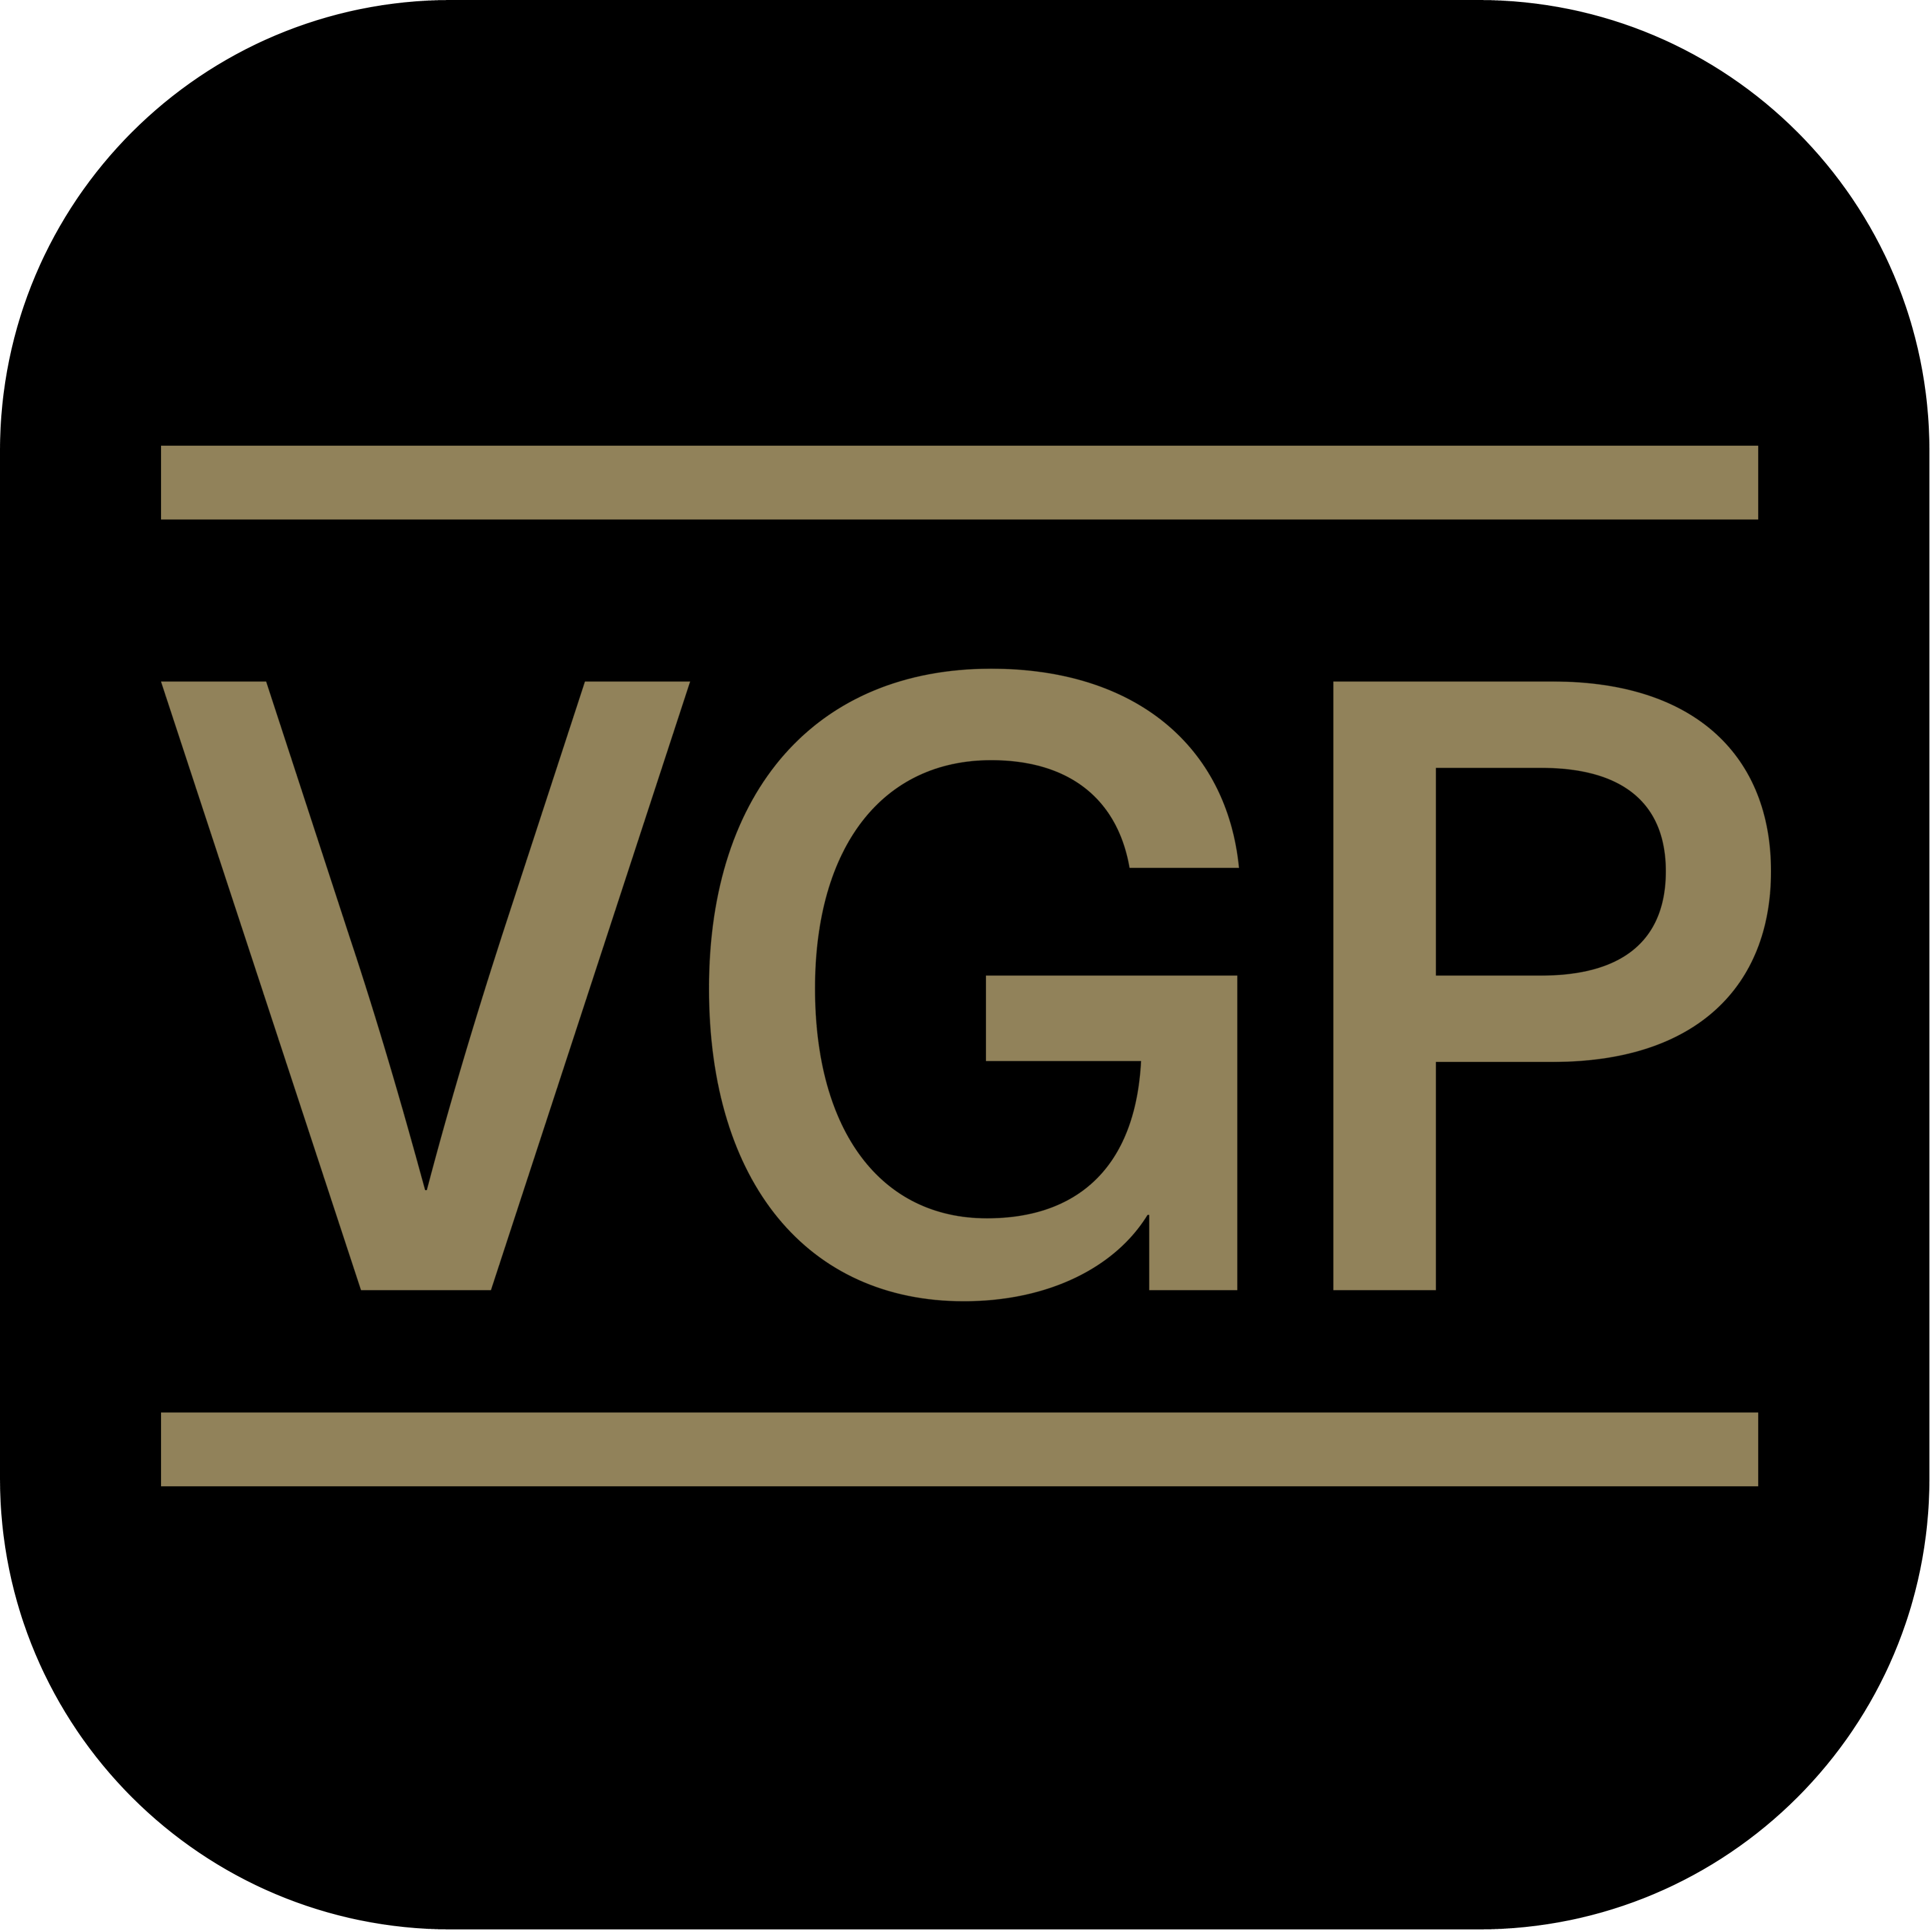 Vgp Group Logo Transparent Photo